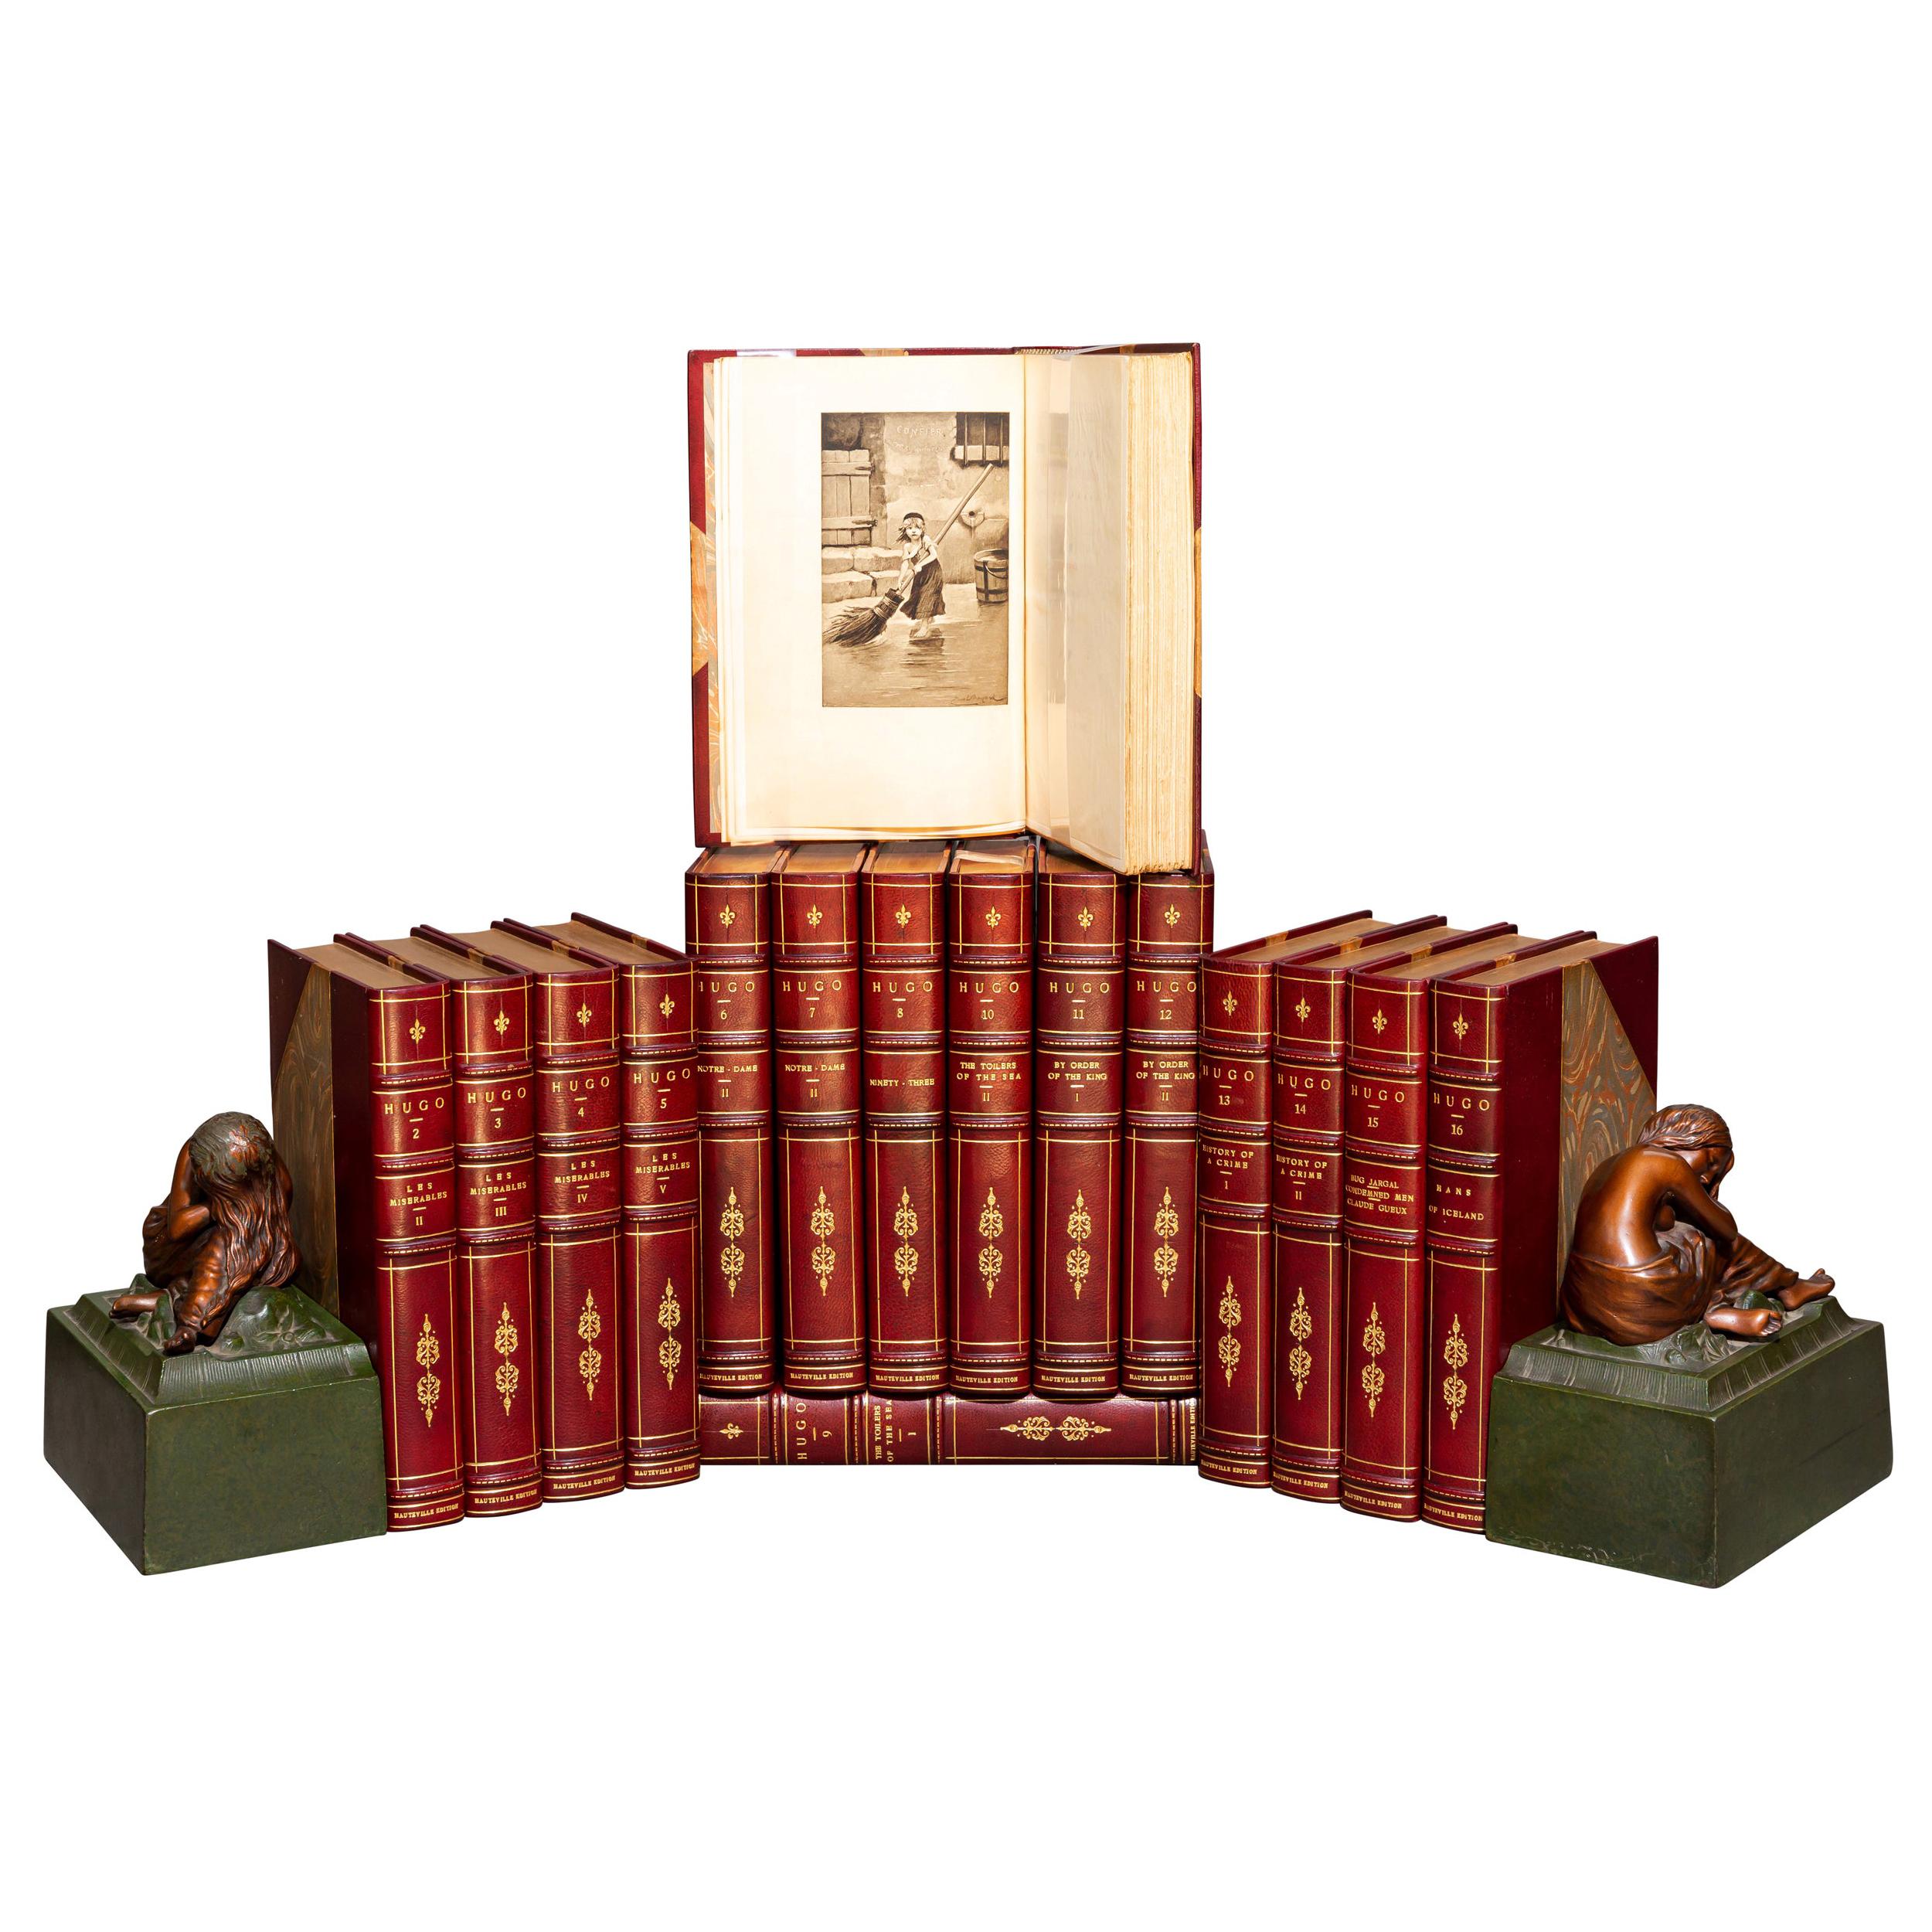 'Book Sets' 16 Volumes, Victor Hugo, Novels